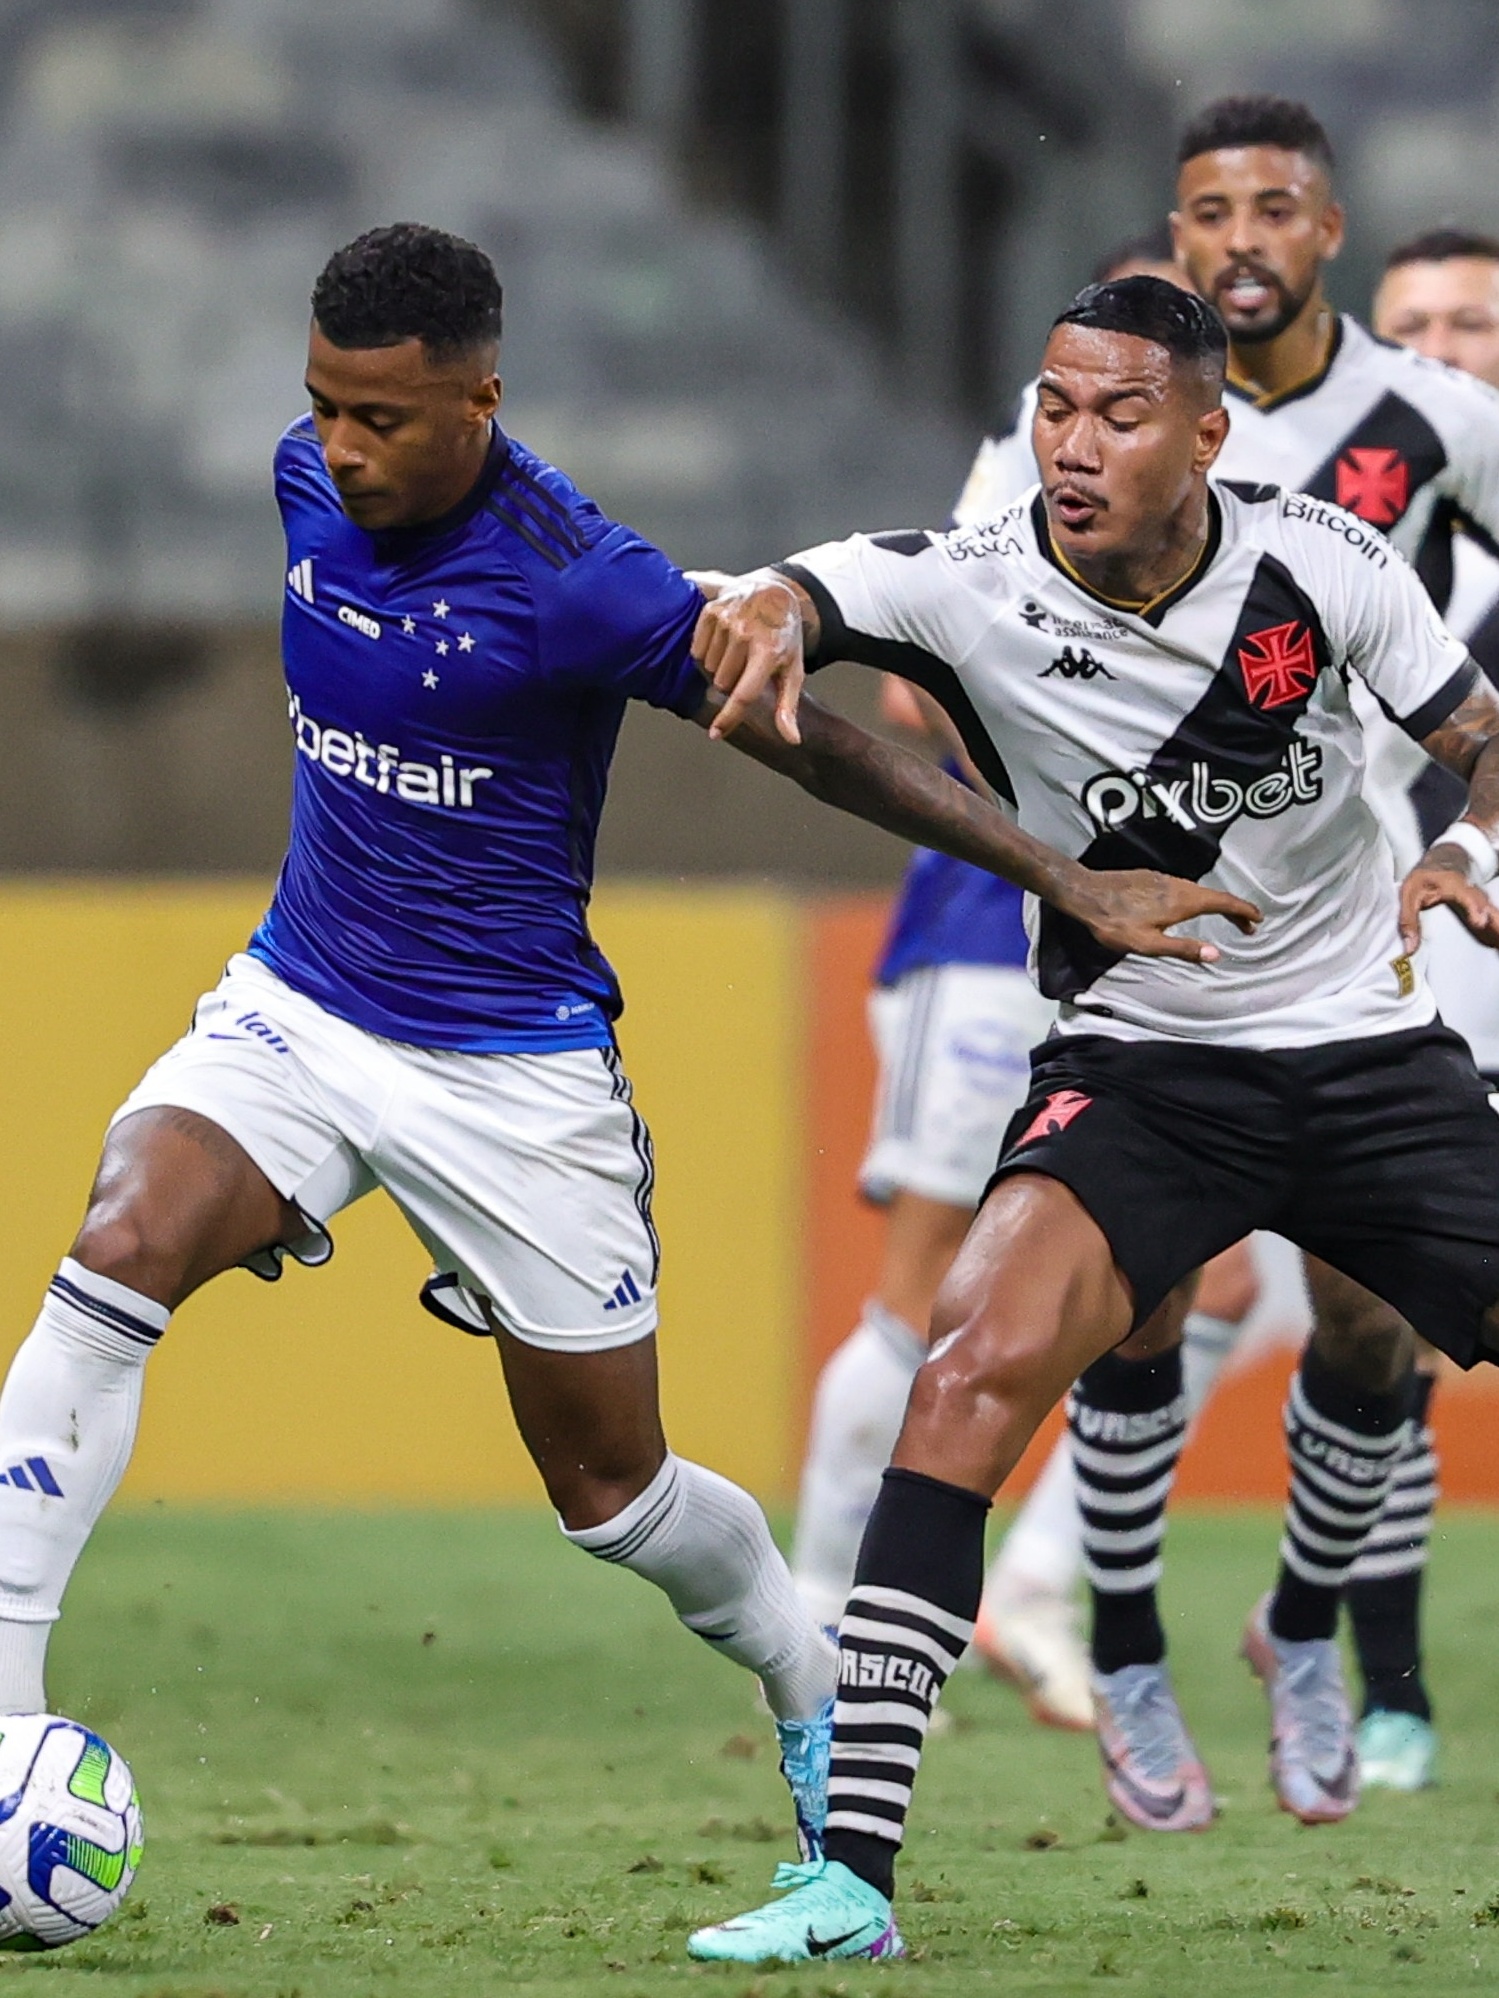 Em crise, Vasco arranca empate do Cruzeiro no Mineirão - Gazeta